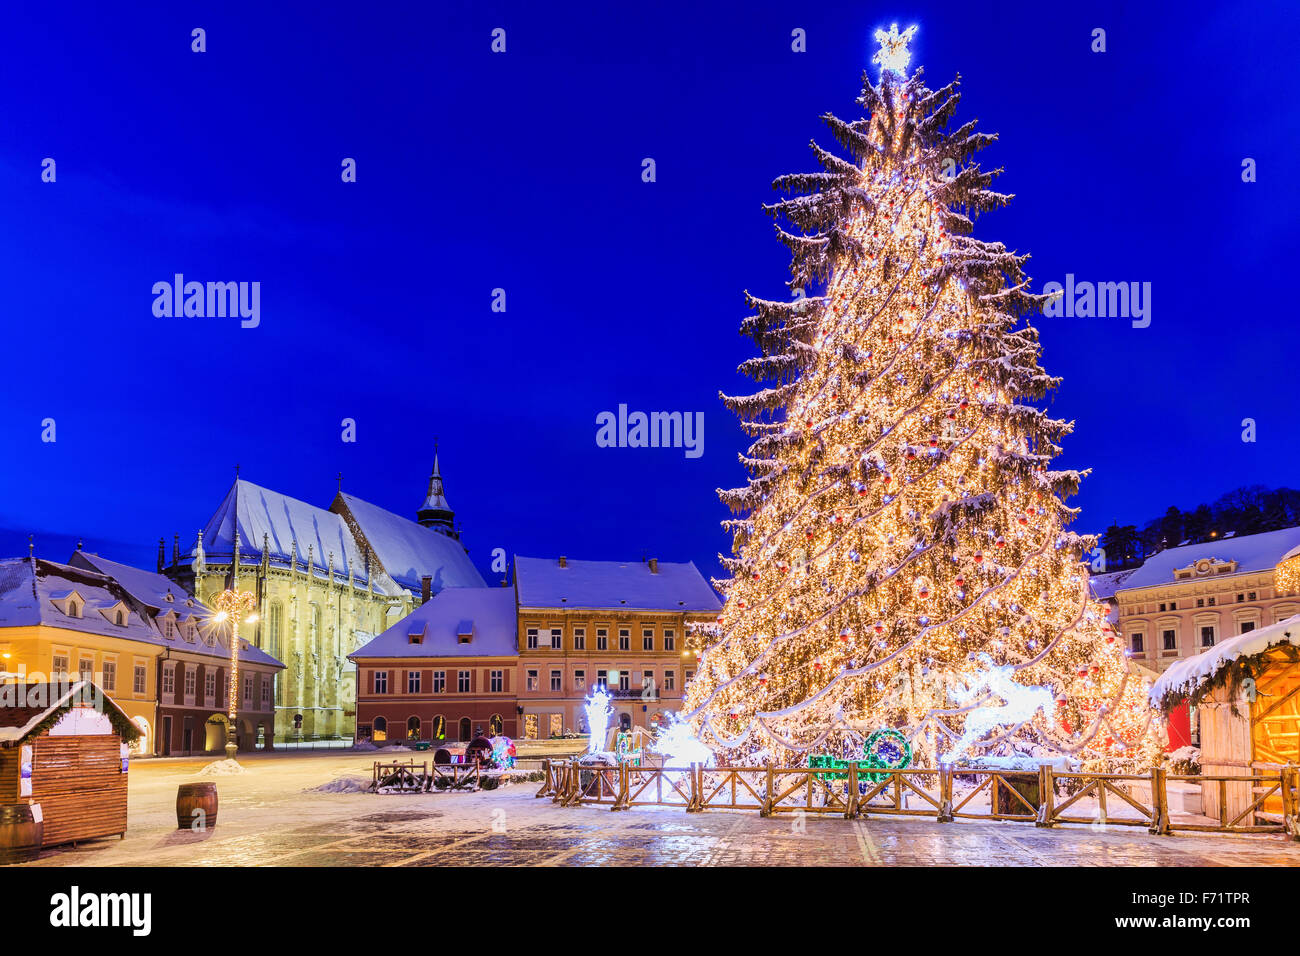 Weihnachtsmarkt auf dem Altstädter Ring, Brasov. Siebenbürgen, Rumänien Stockfoto